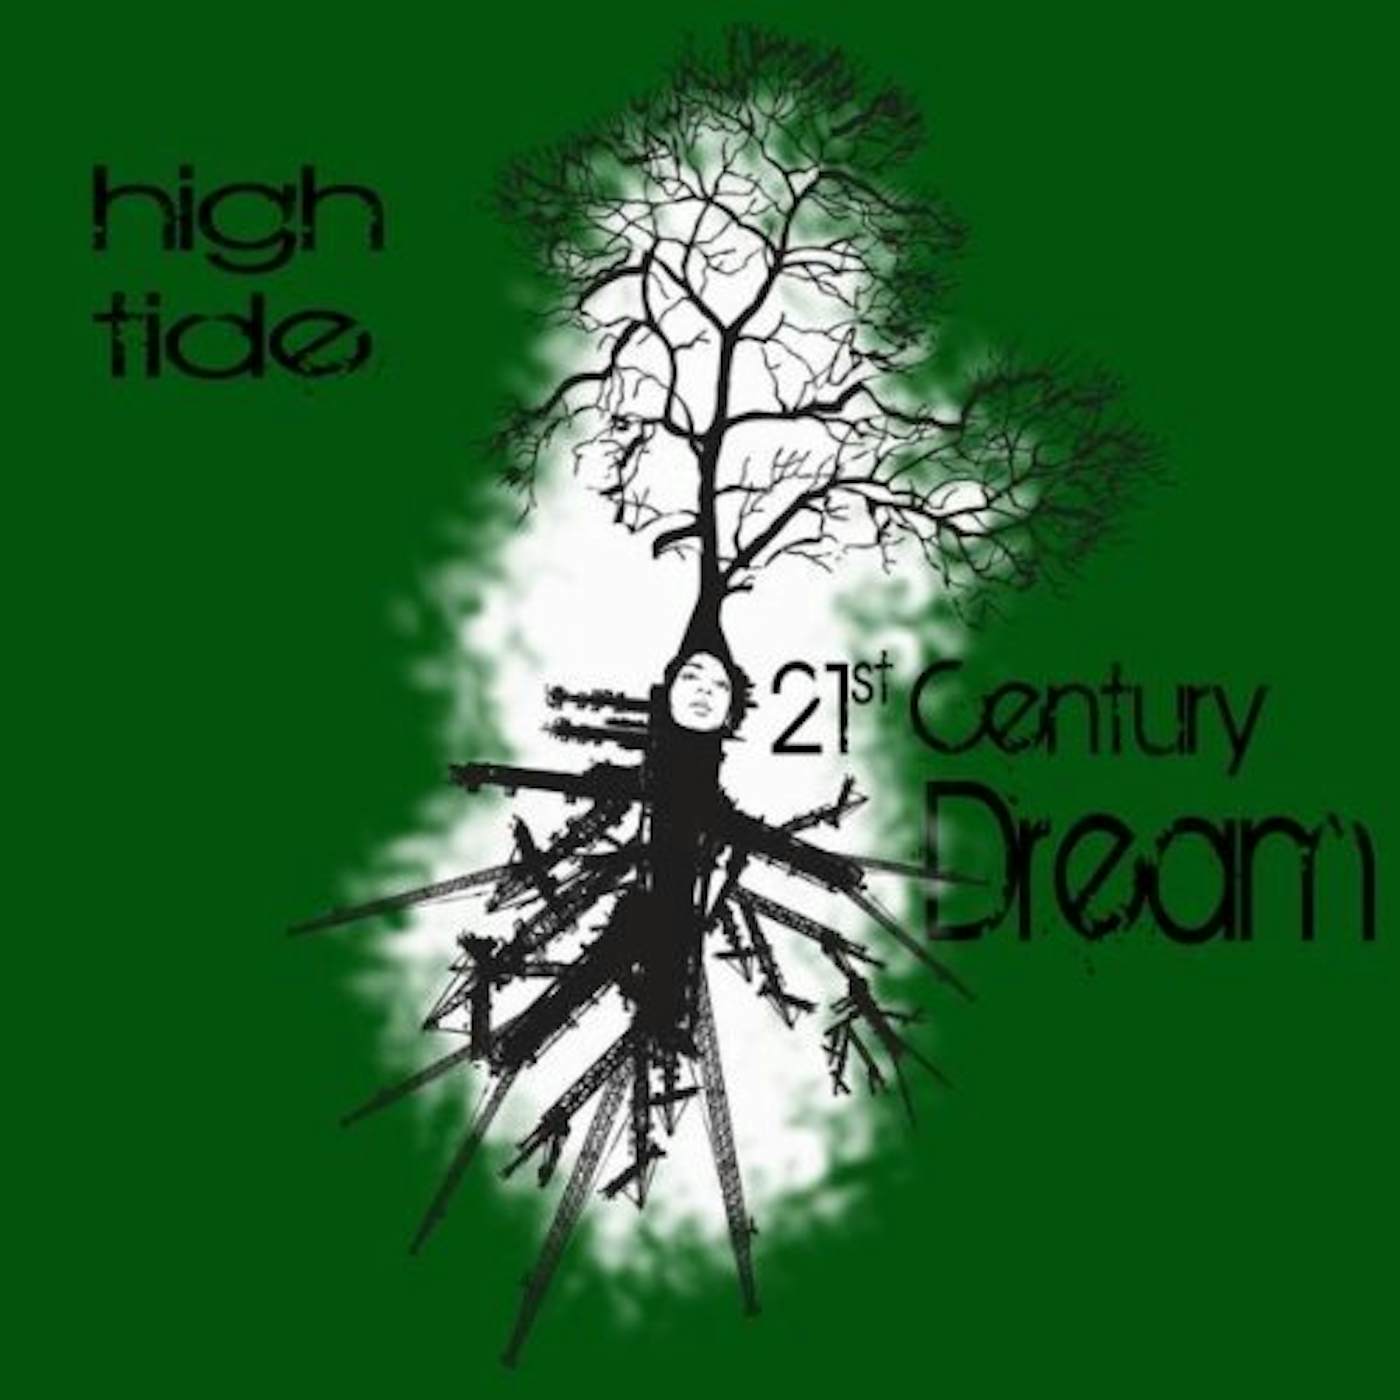 High Tide 21ST CENTURY DREAM CD